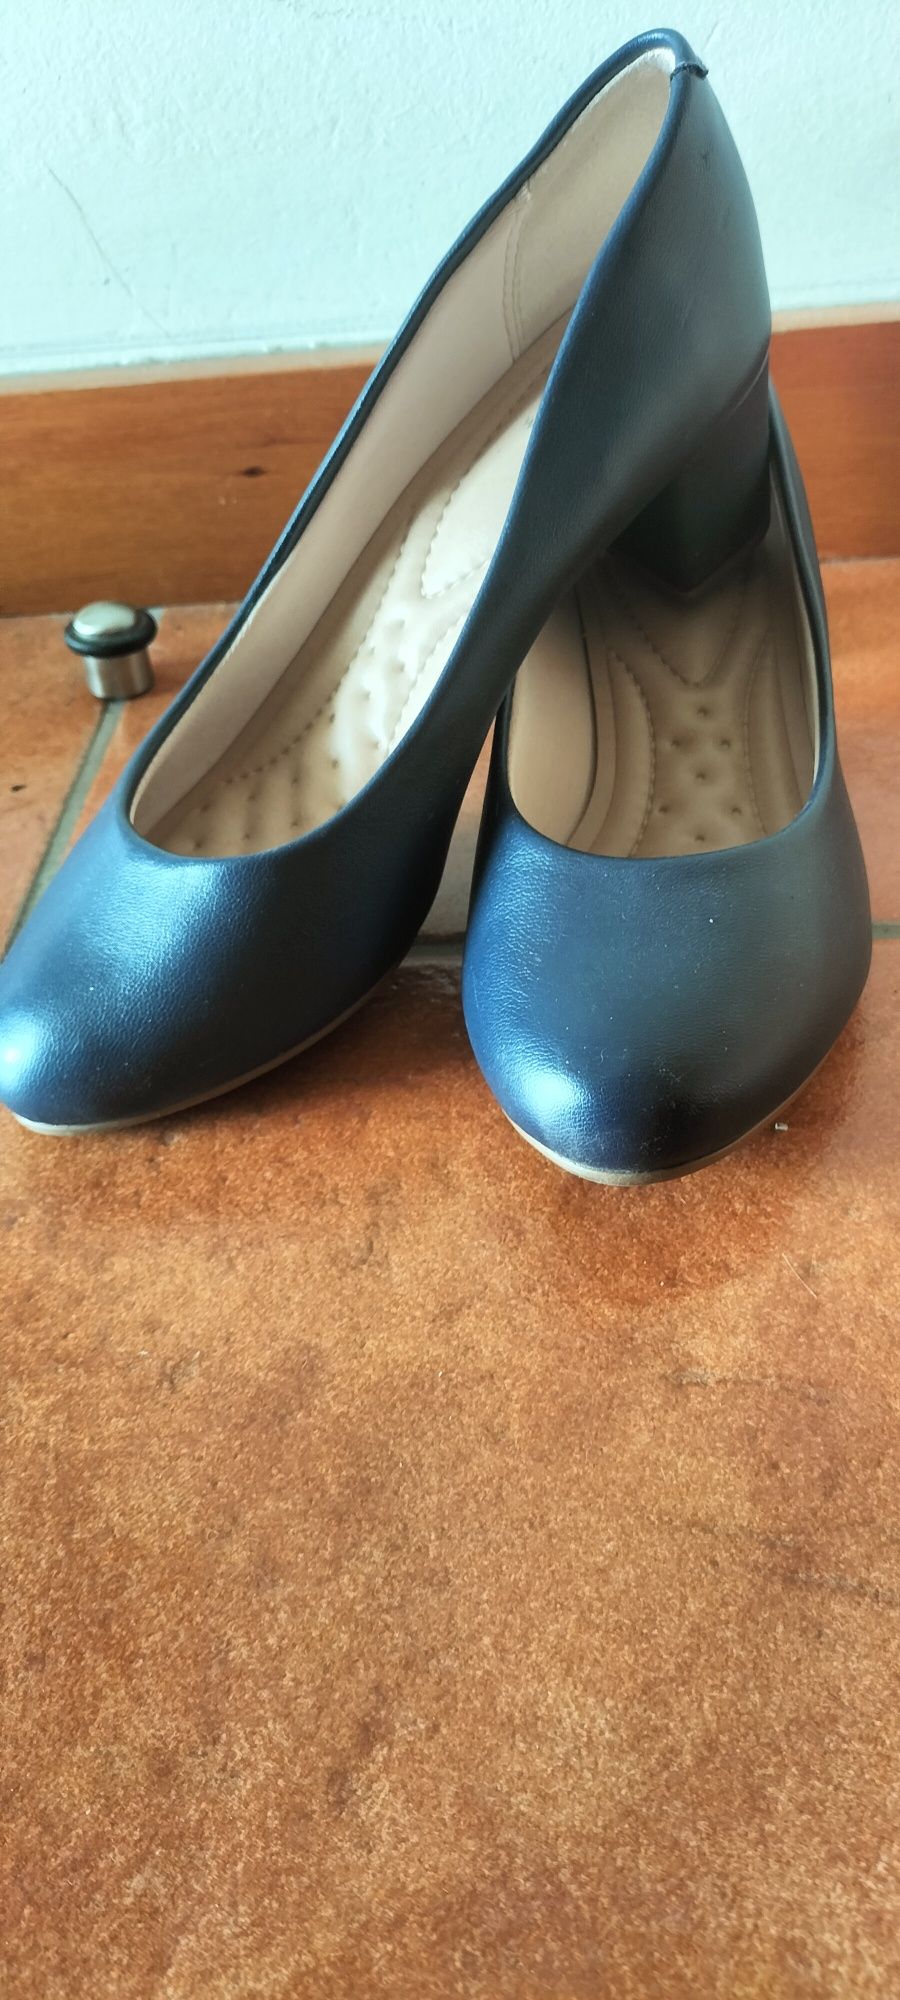 Vendo sapato azul